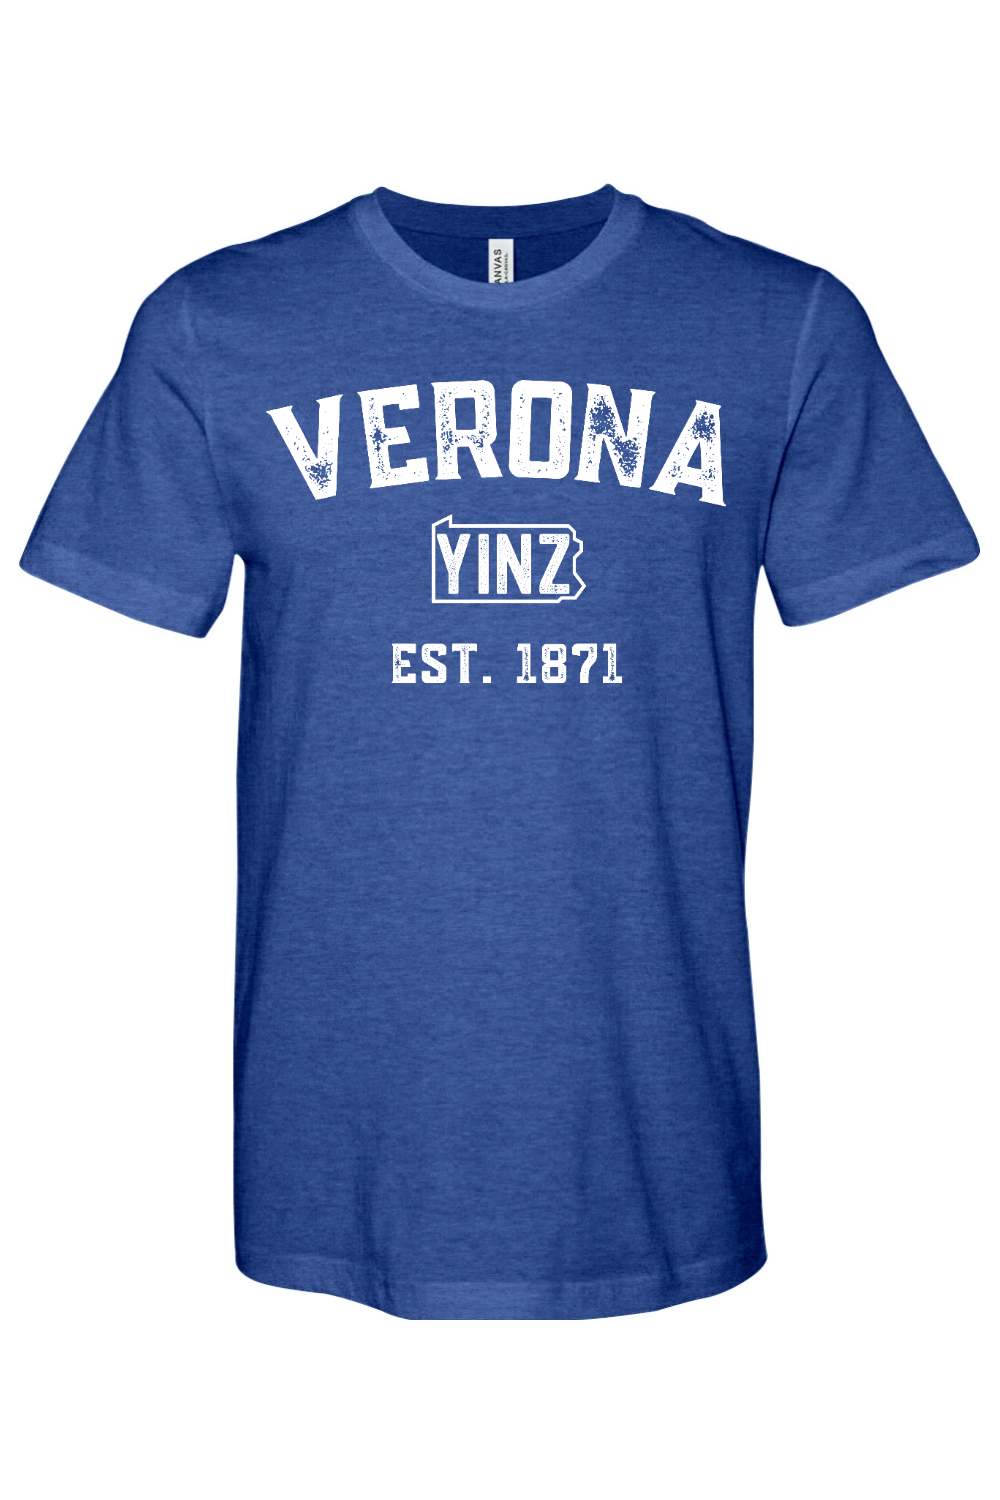 Verona Yinzylvania - Yinzylvania